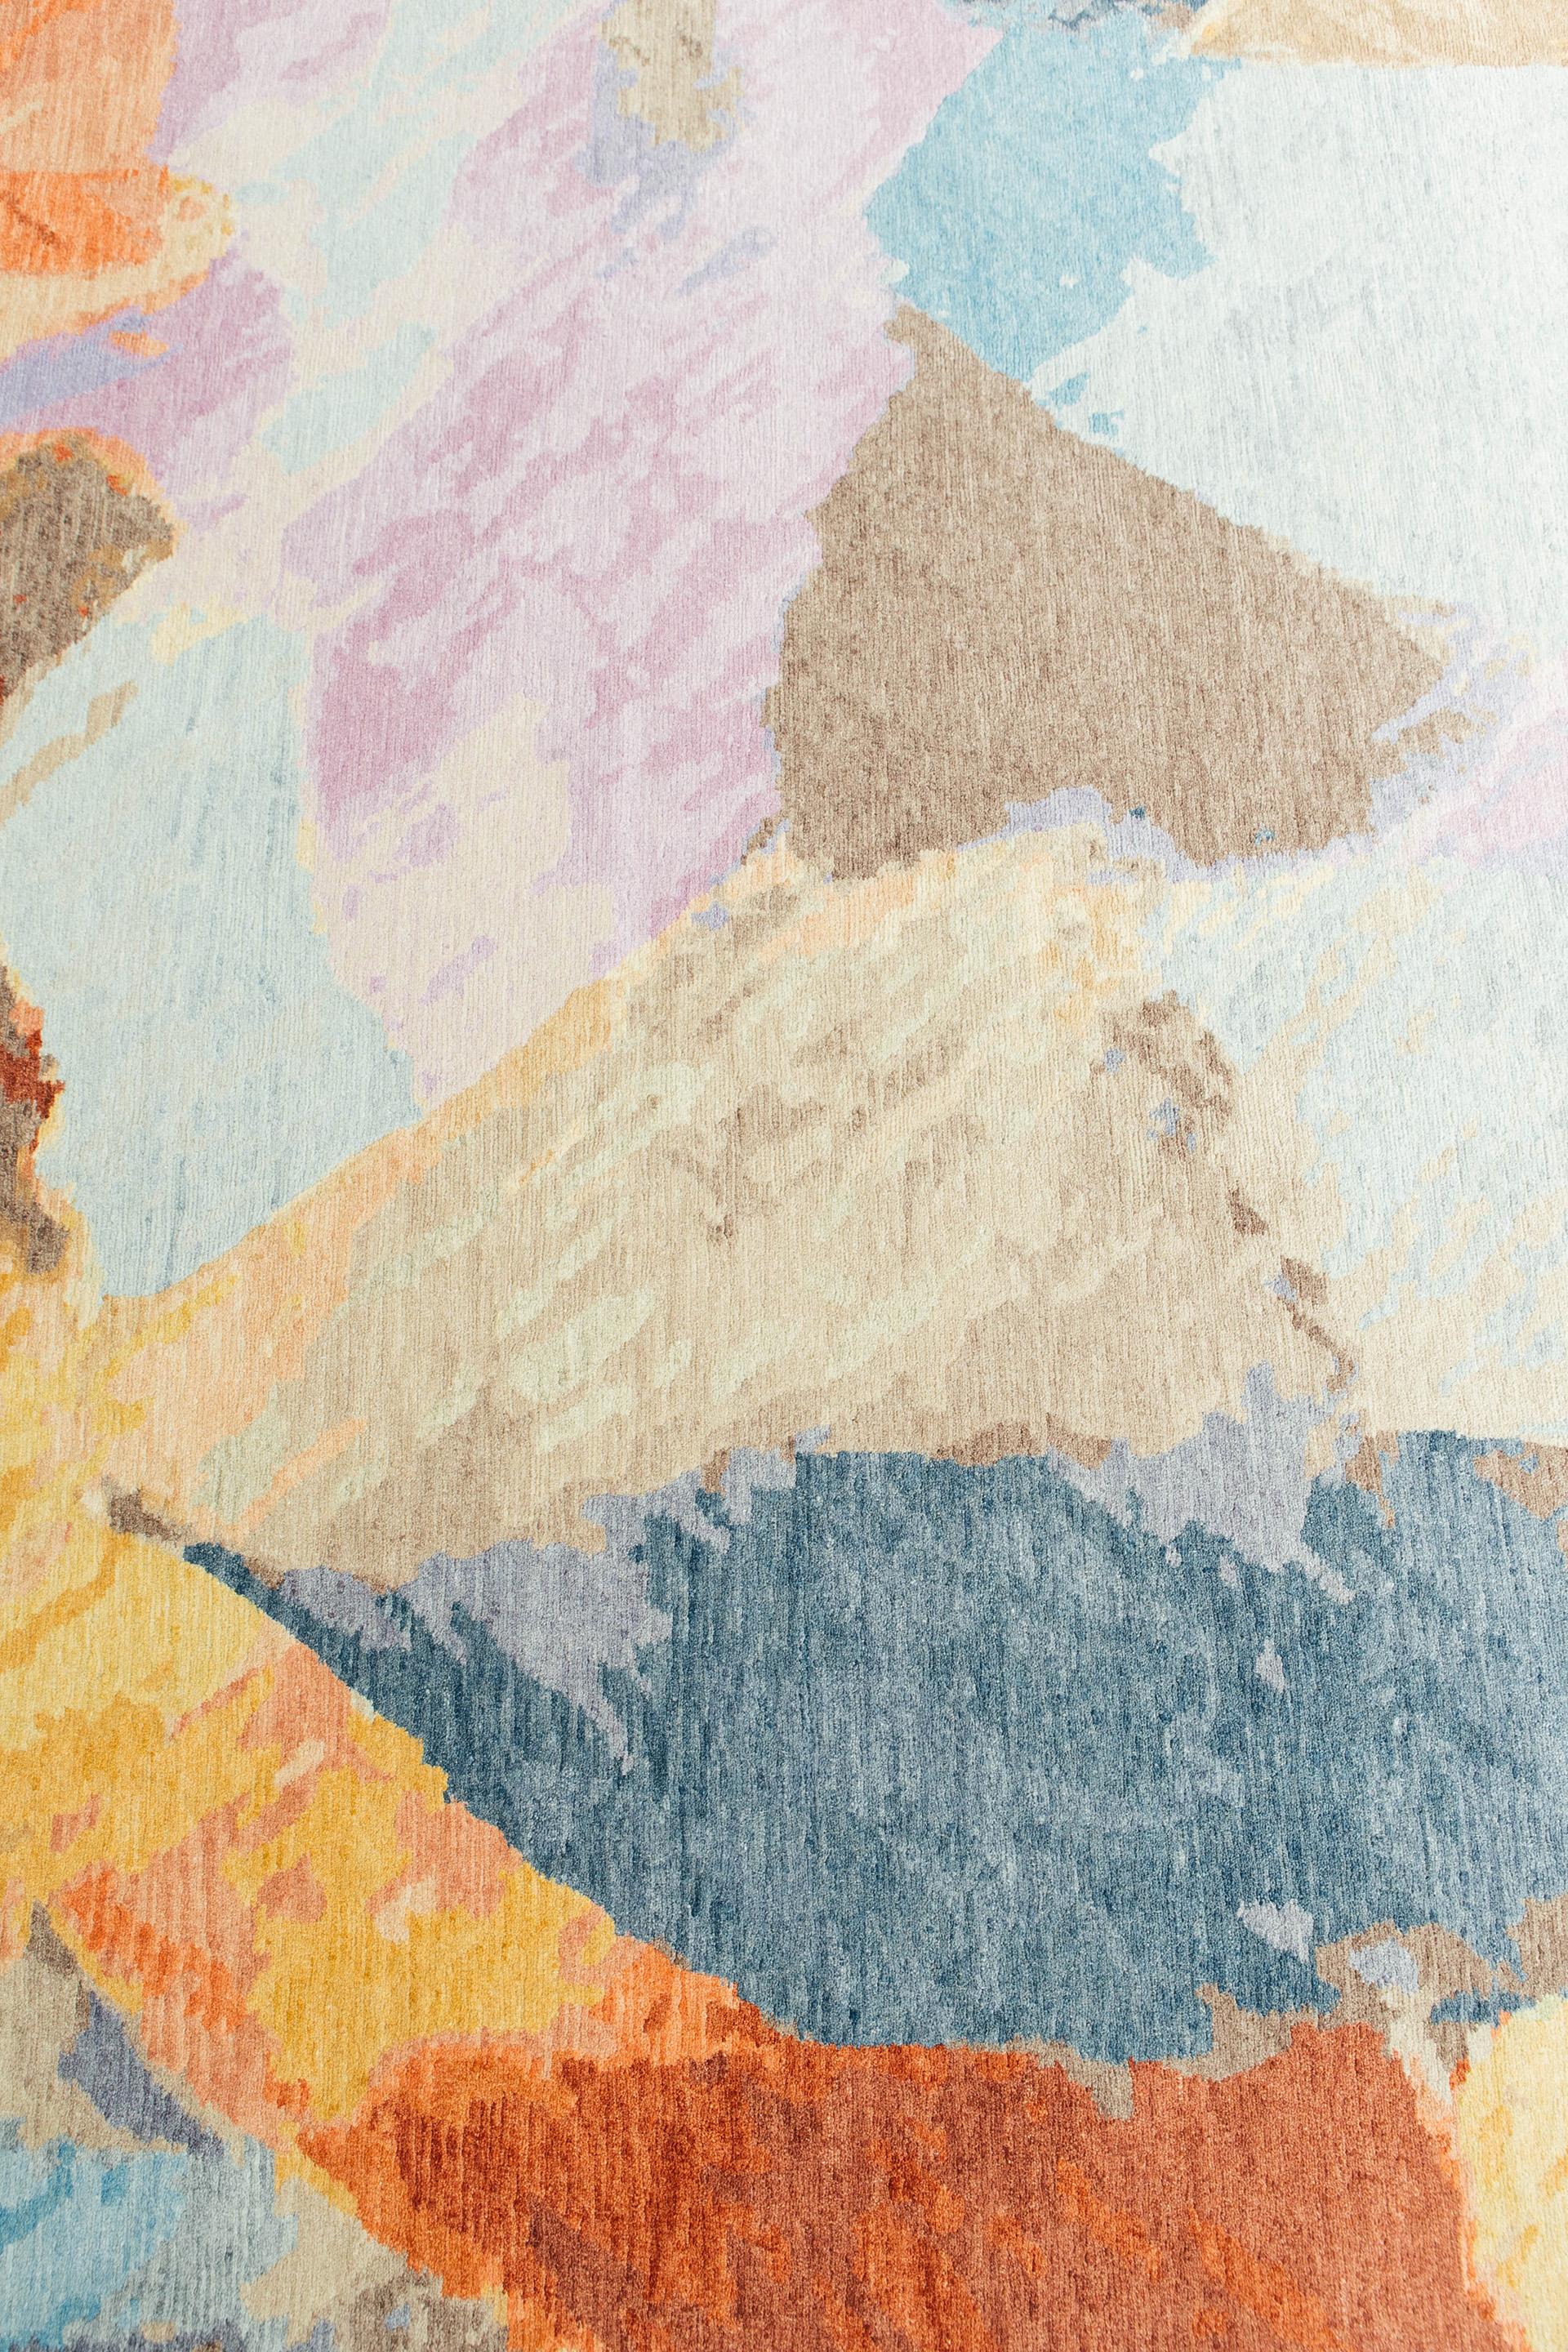 Summer Overlook ist ein lebendiger und auffälliger Teppich, der aus lebhaften Pastellfarben und verspielten Strichen abstrakte Formen schafft. Dieser einzigartige Teppich aus Wolle und Seide ist ein Statement, das bleibende Eindrücke